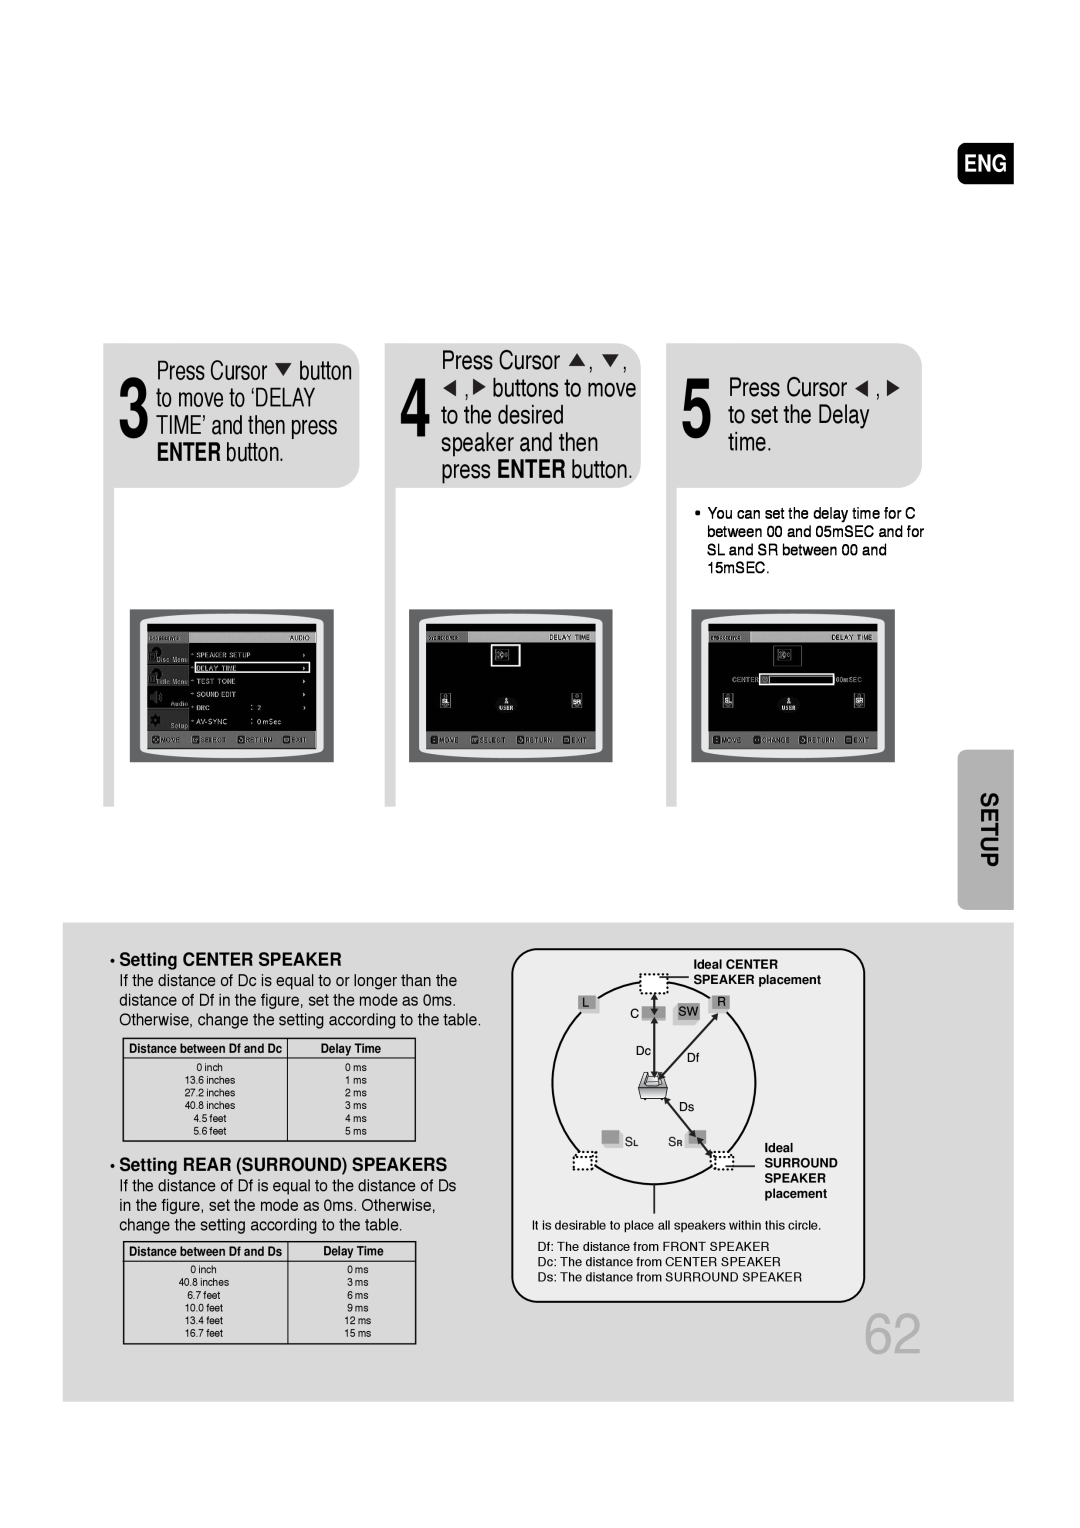 Samsung SDSM-EX, P1200-SECA manual Press Cursor , to set the Delay time, Press Cursor button, Setup, Setting CENTER SPEAKER 